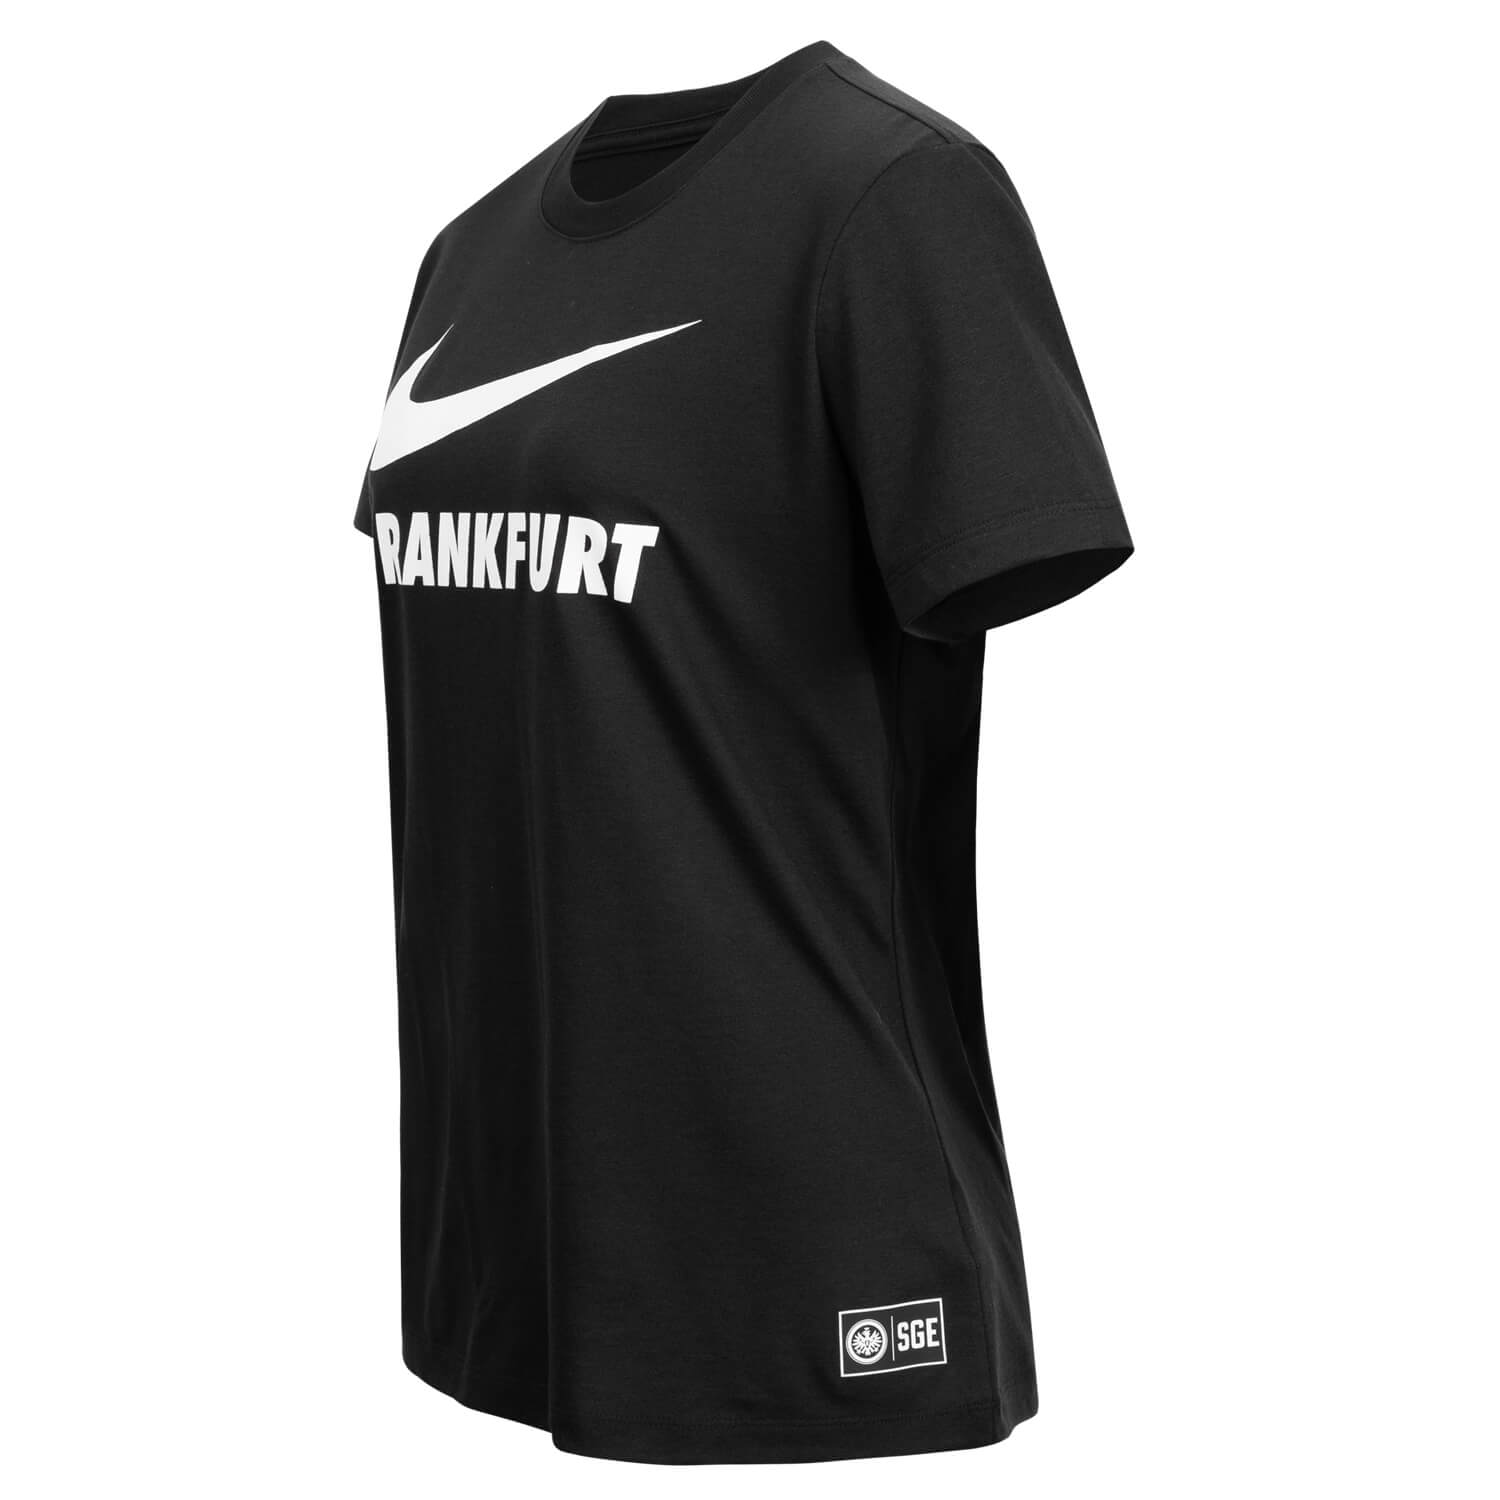 Bild 3: Nike Damen T-Shirt Swoosh schwarz